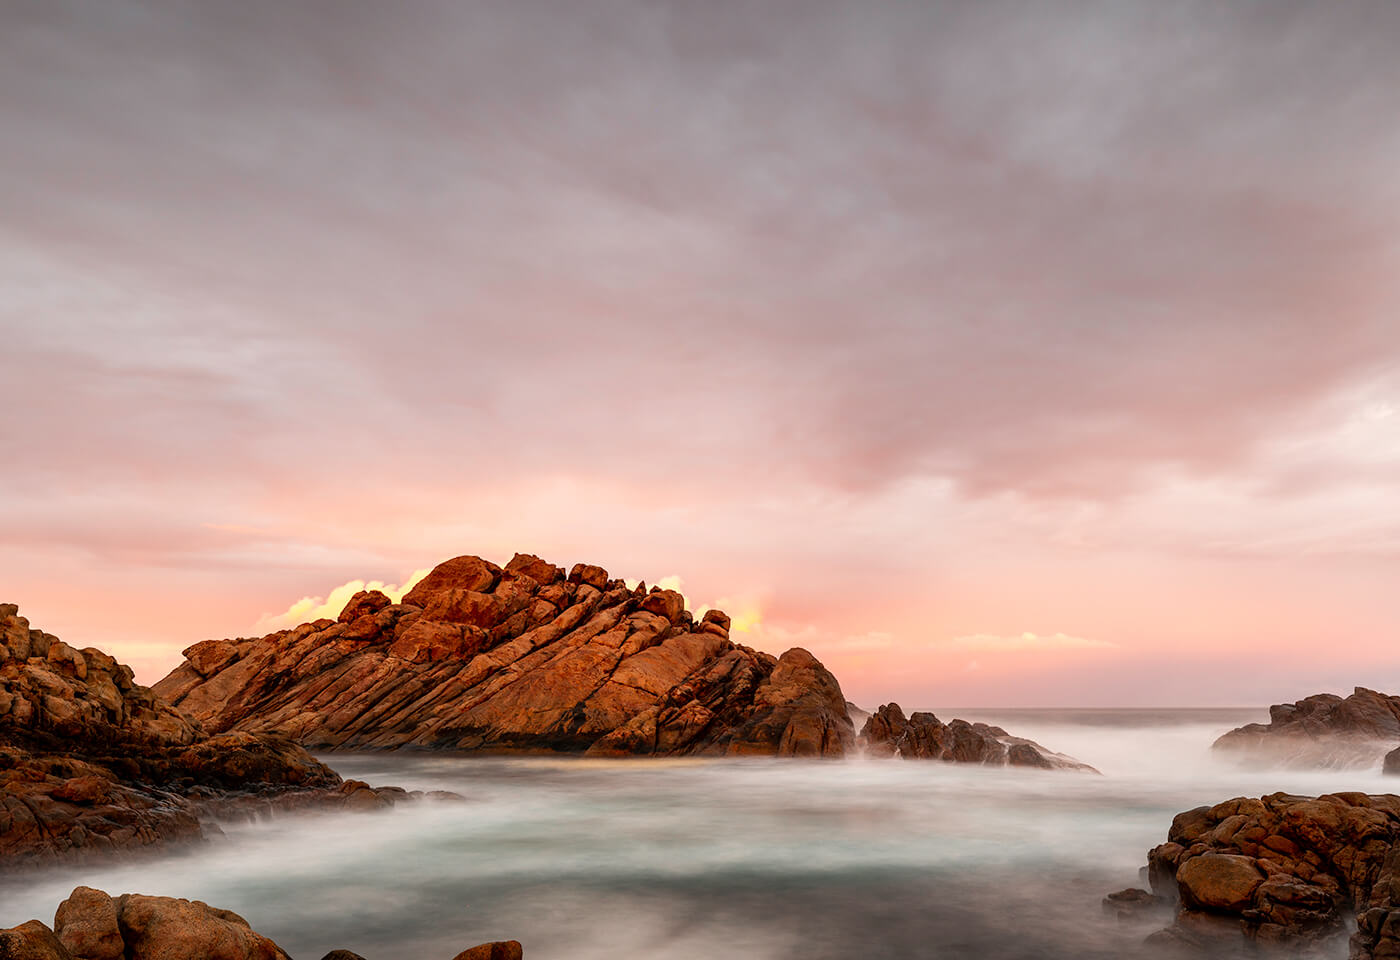 Image of ocean rocks by Steve Huddy